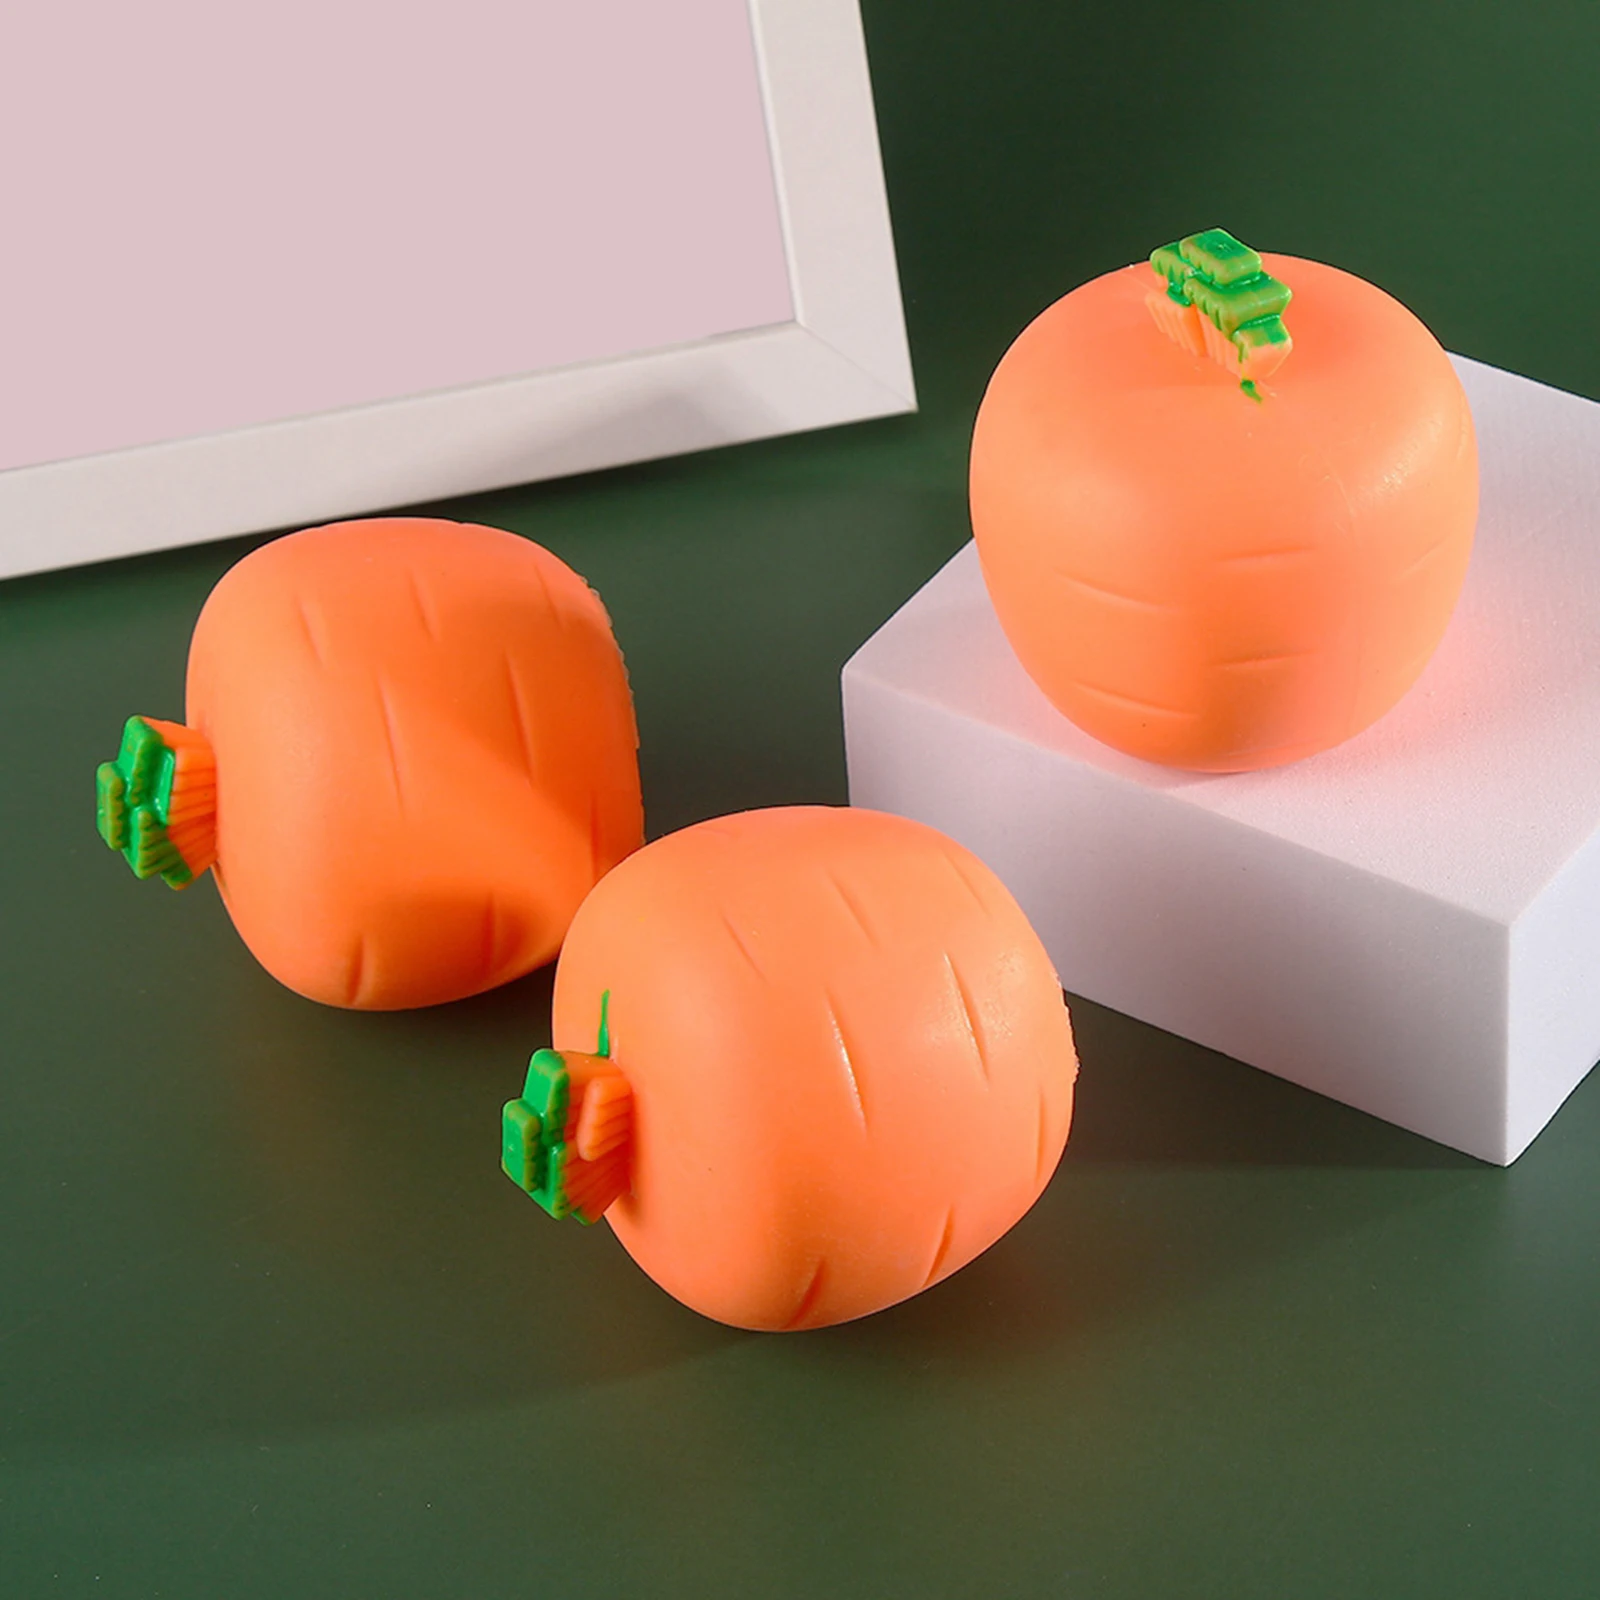 Śliczne marchew królik kształt zabawki typu Fidget śmieszne zabawki do ściskania dekompresja zabawki sensoryczne nuda zabawki antystresowe dla dzieci dorosłych